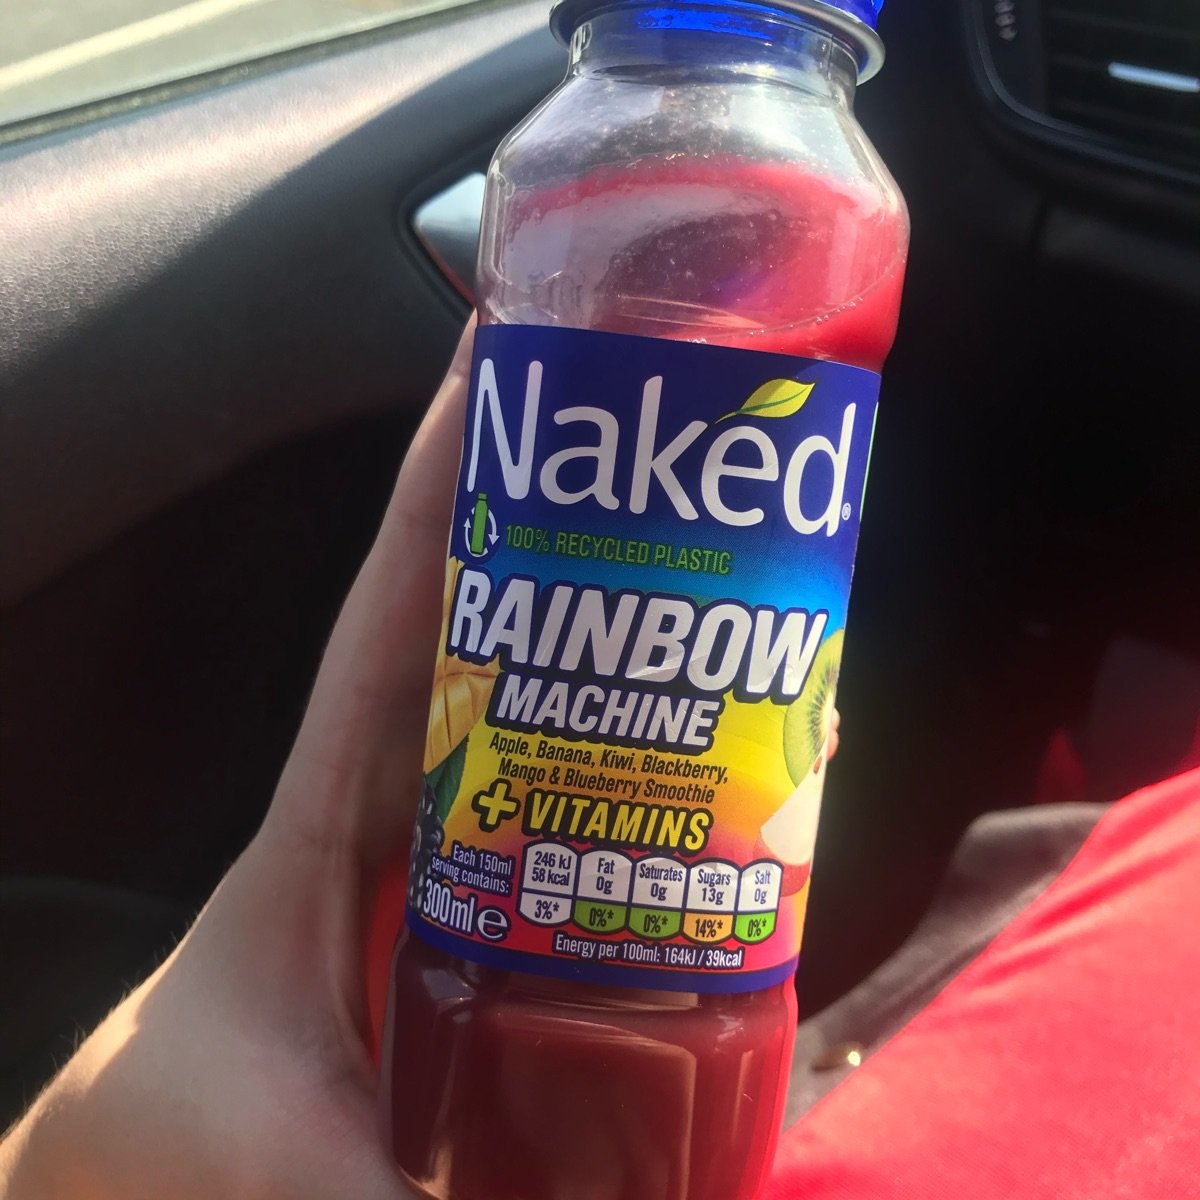 Naked Juice: Rainbow Machine, Green Machine & Blue Machine Review